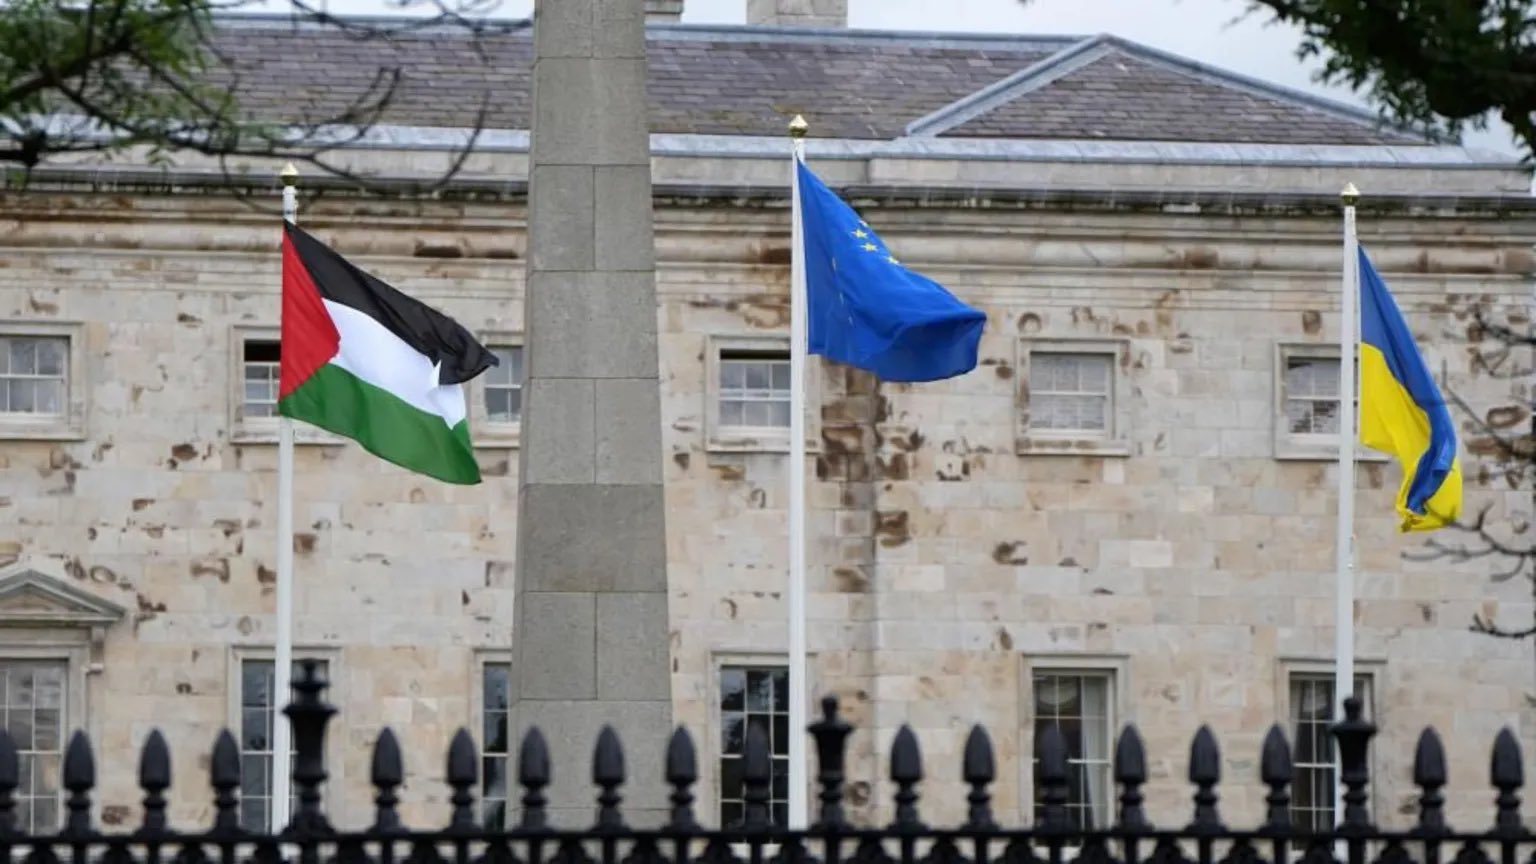 رفع علم فلسطين في مبنى برلمان إيرلندا بعد الاعتراف رسميًّا بدولة فلسطين